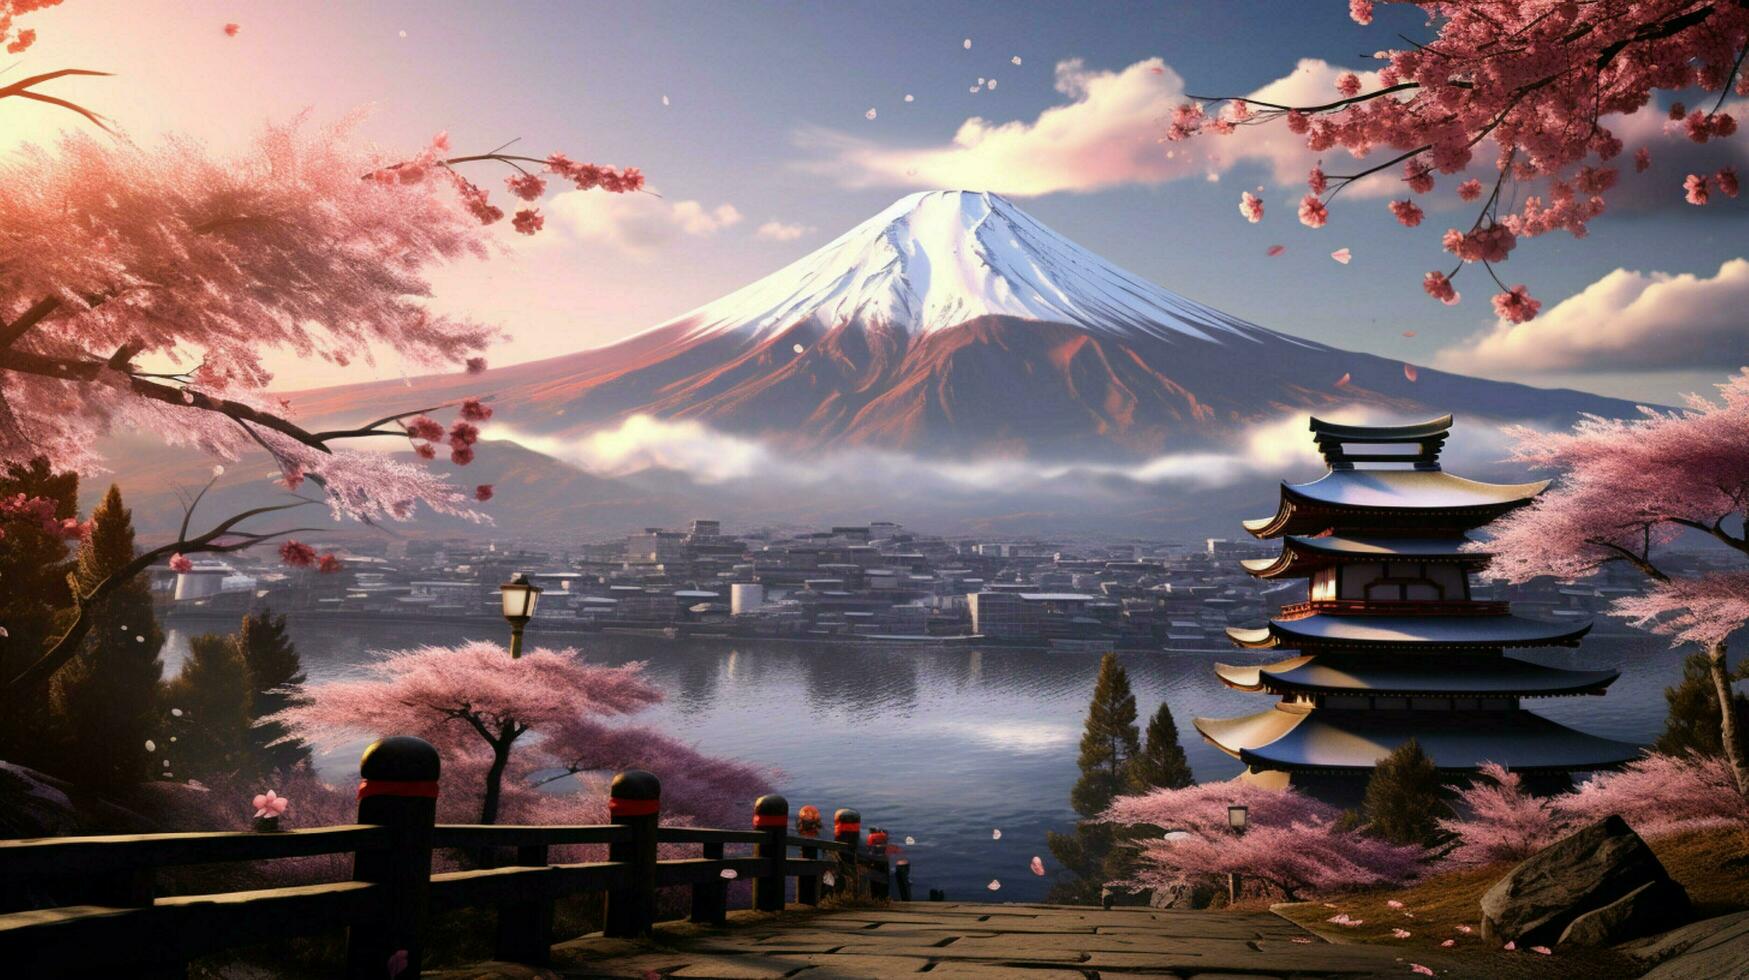 Tapeten von montieren Fuji im das Stil von grobkörnig foto